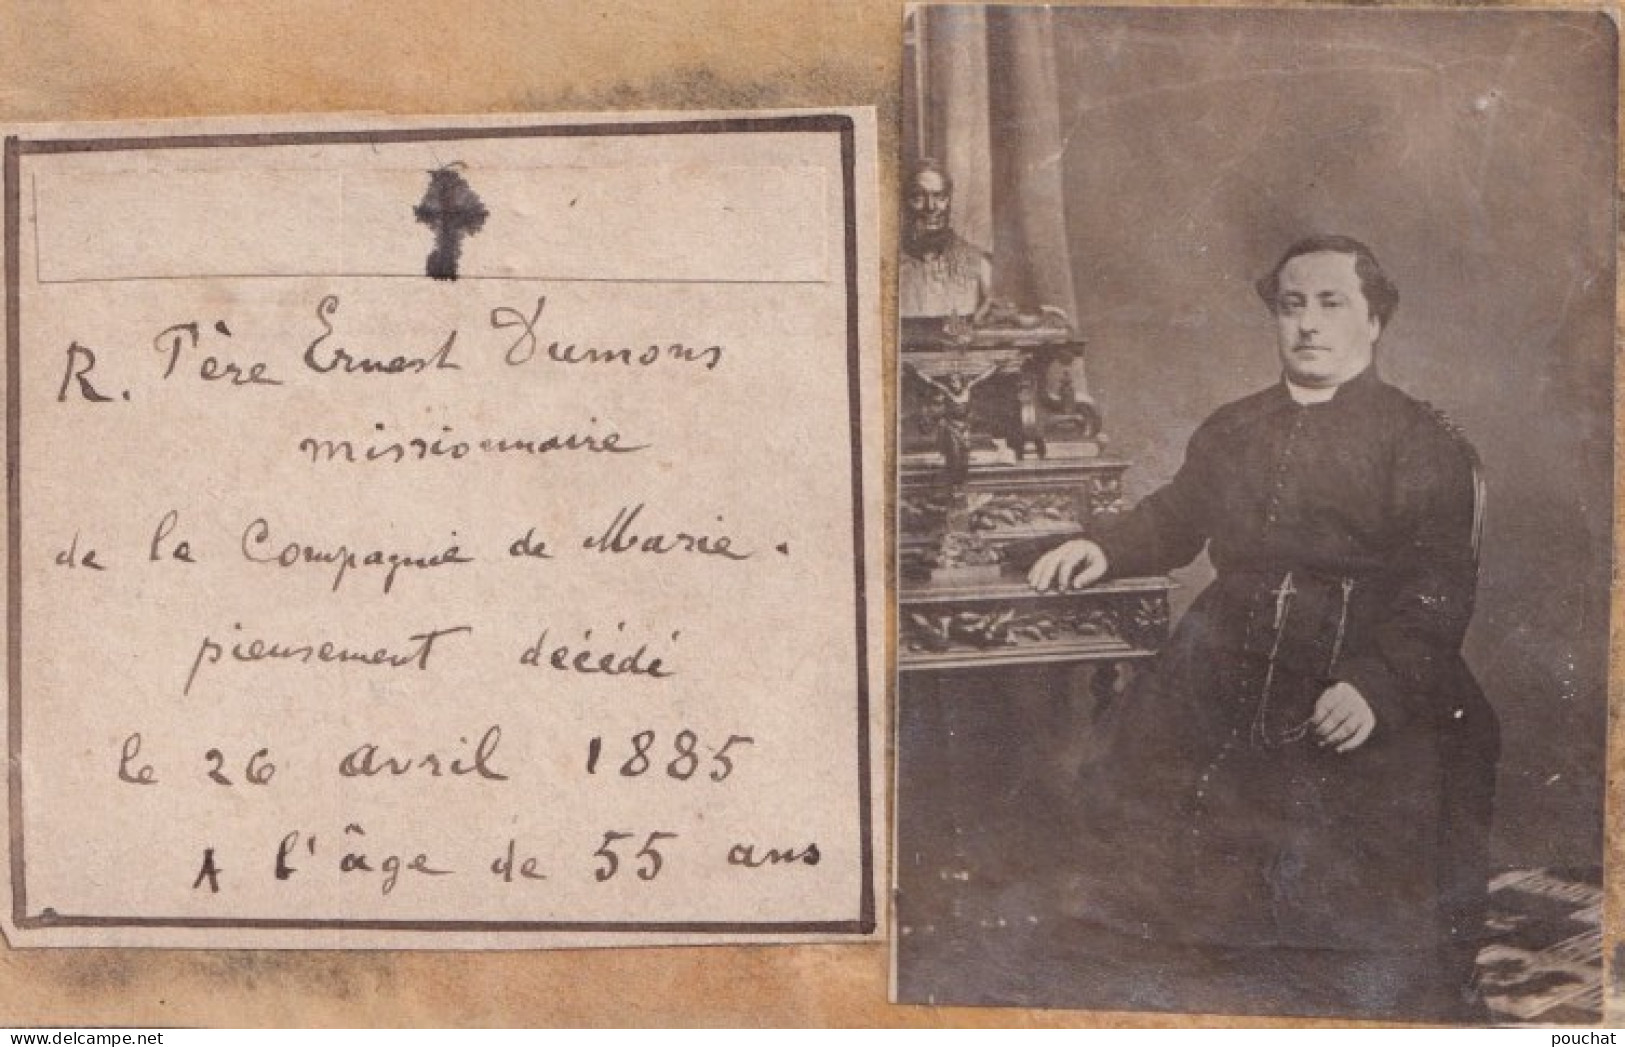 R. PERE ERNEST DUMONS - CARTE PHOTO - MISSIONNAIRE DE LA COMPAGNIE DE MARIE - DECEDE A L ' AGE DE 55 ANS - 1904  - Missions